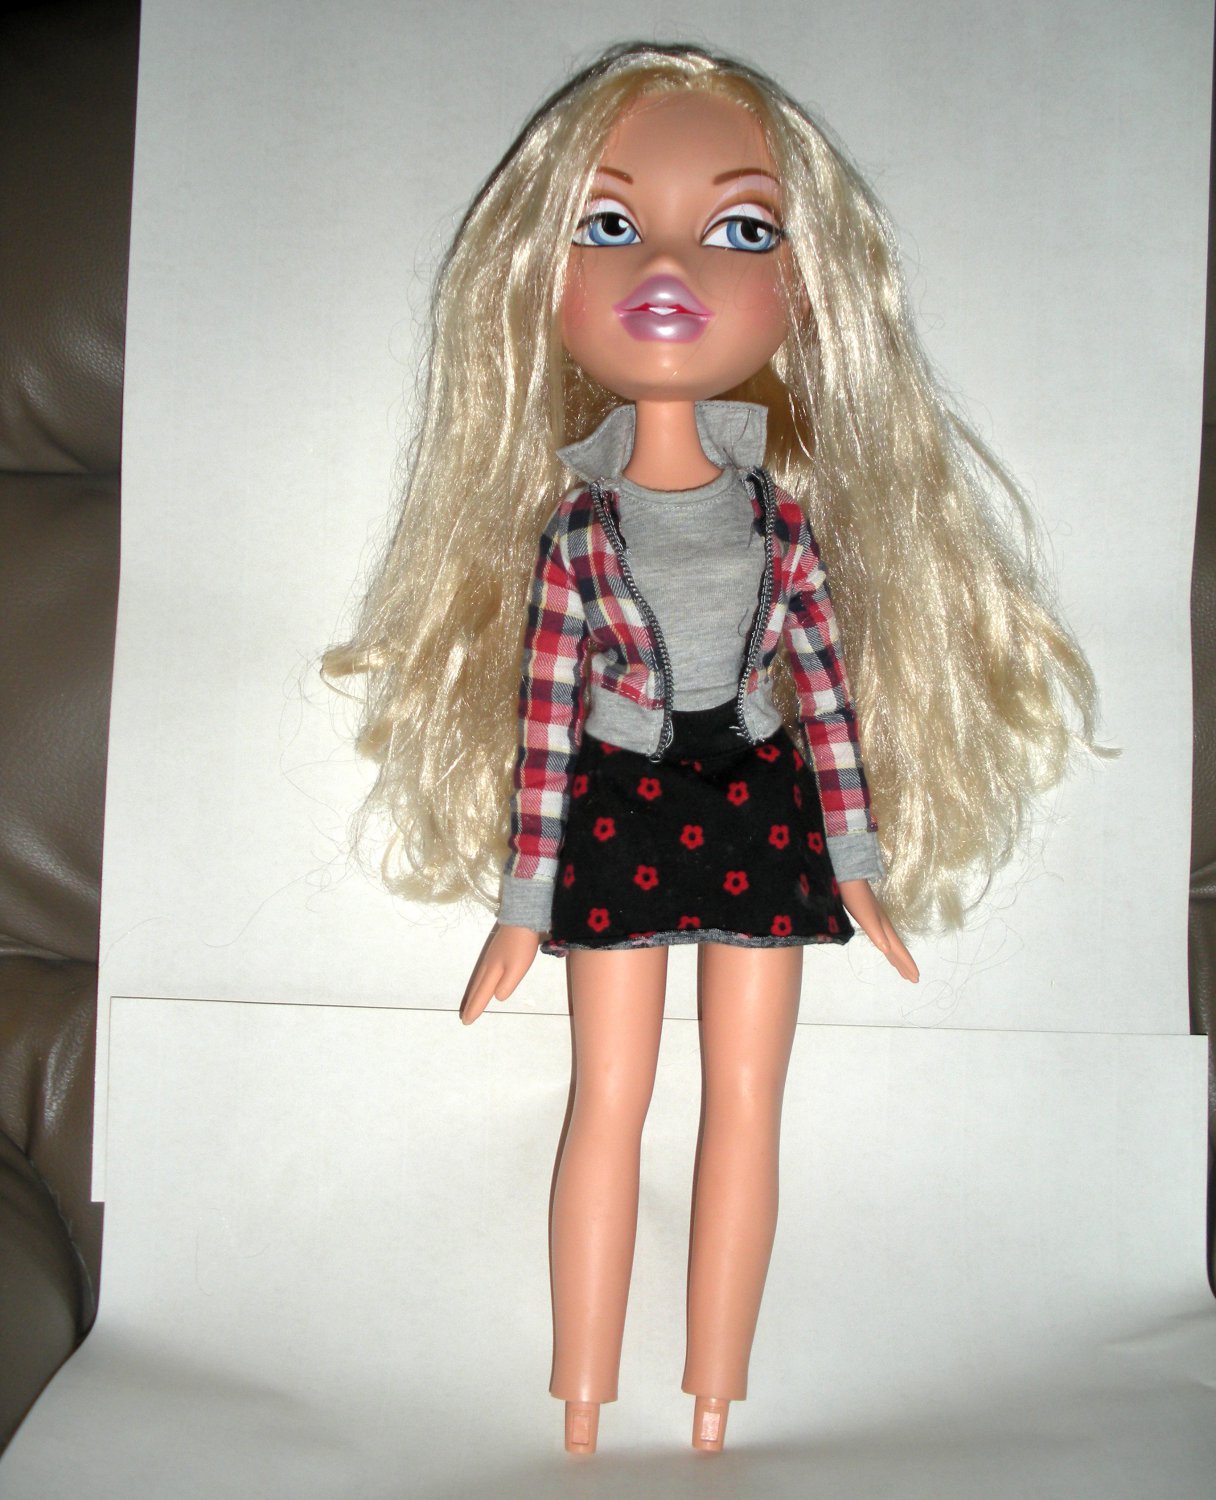 Cloe Bratz Doll Walmart Exclusive 24" Tall.